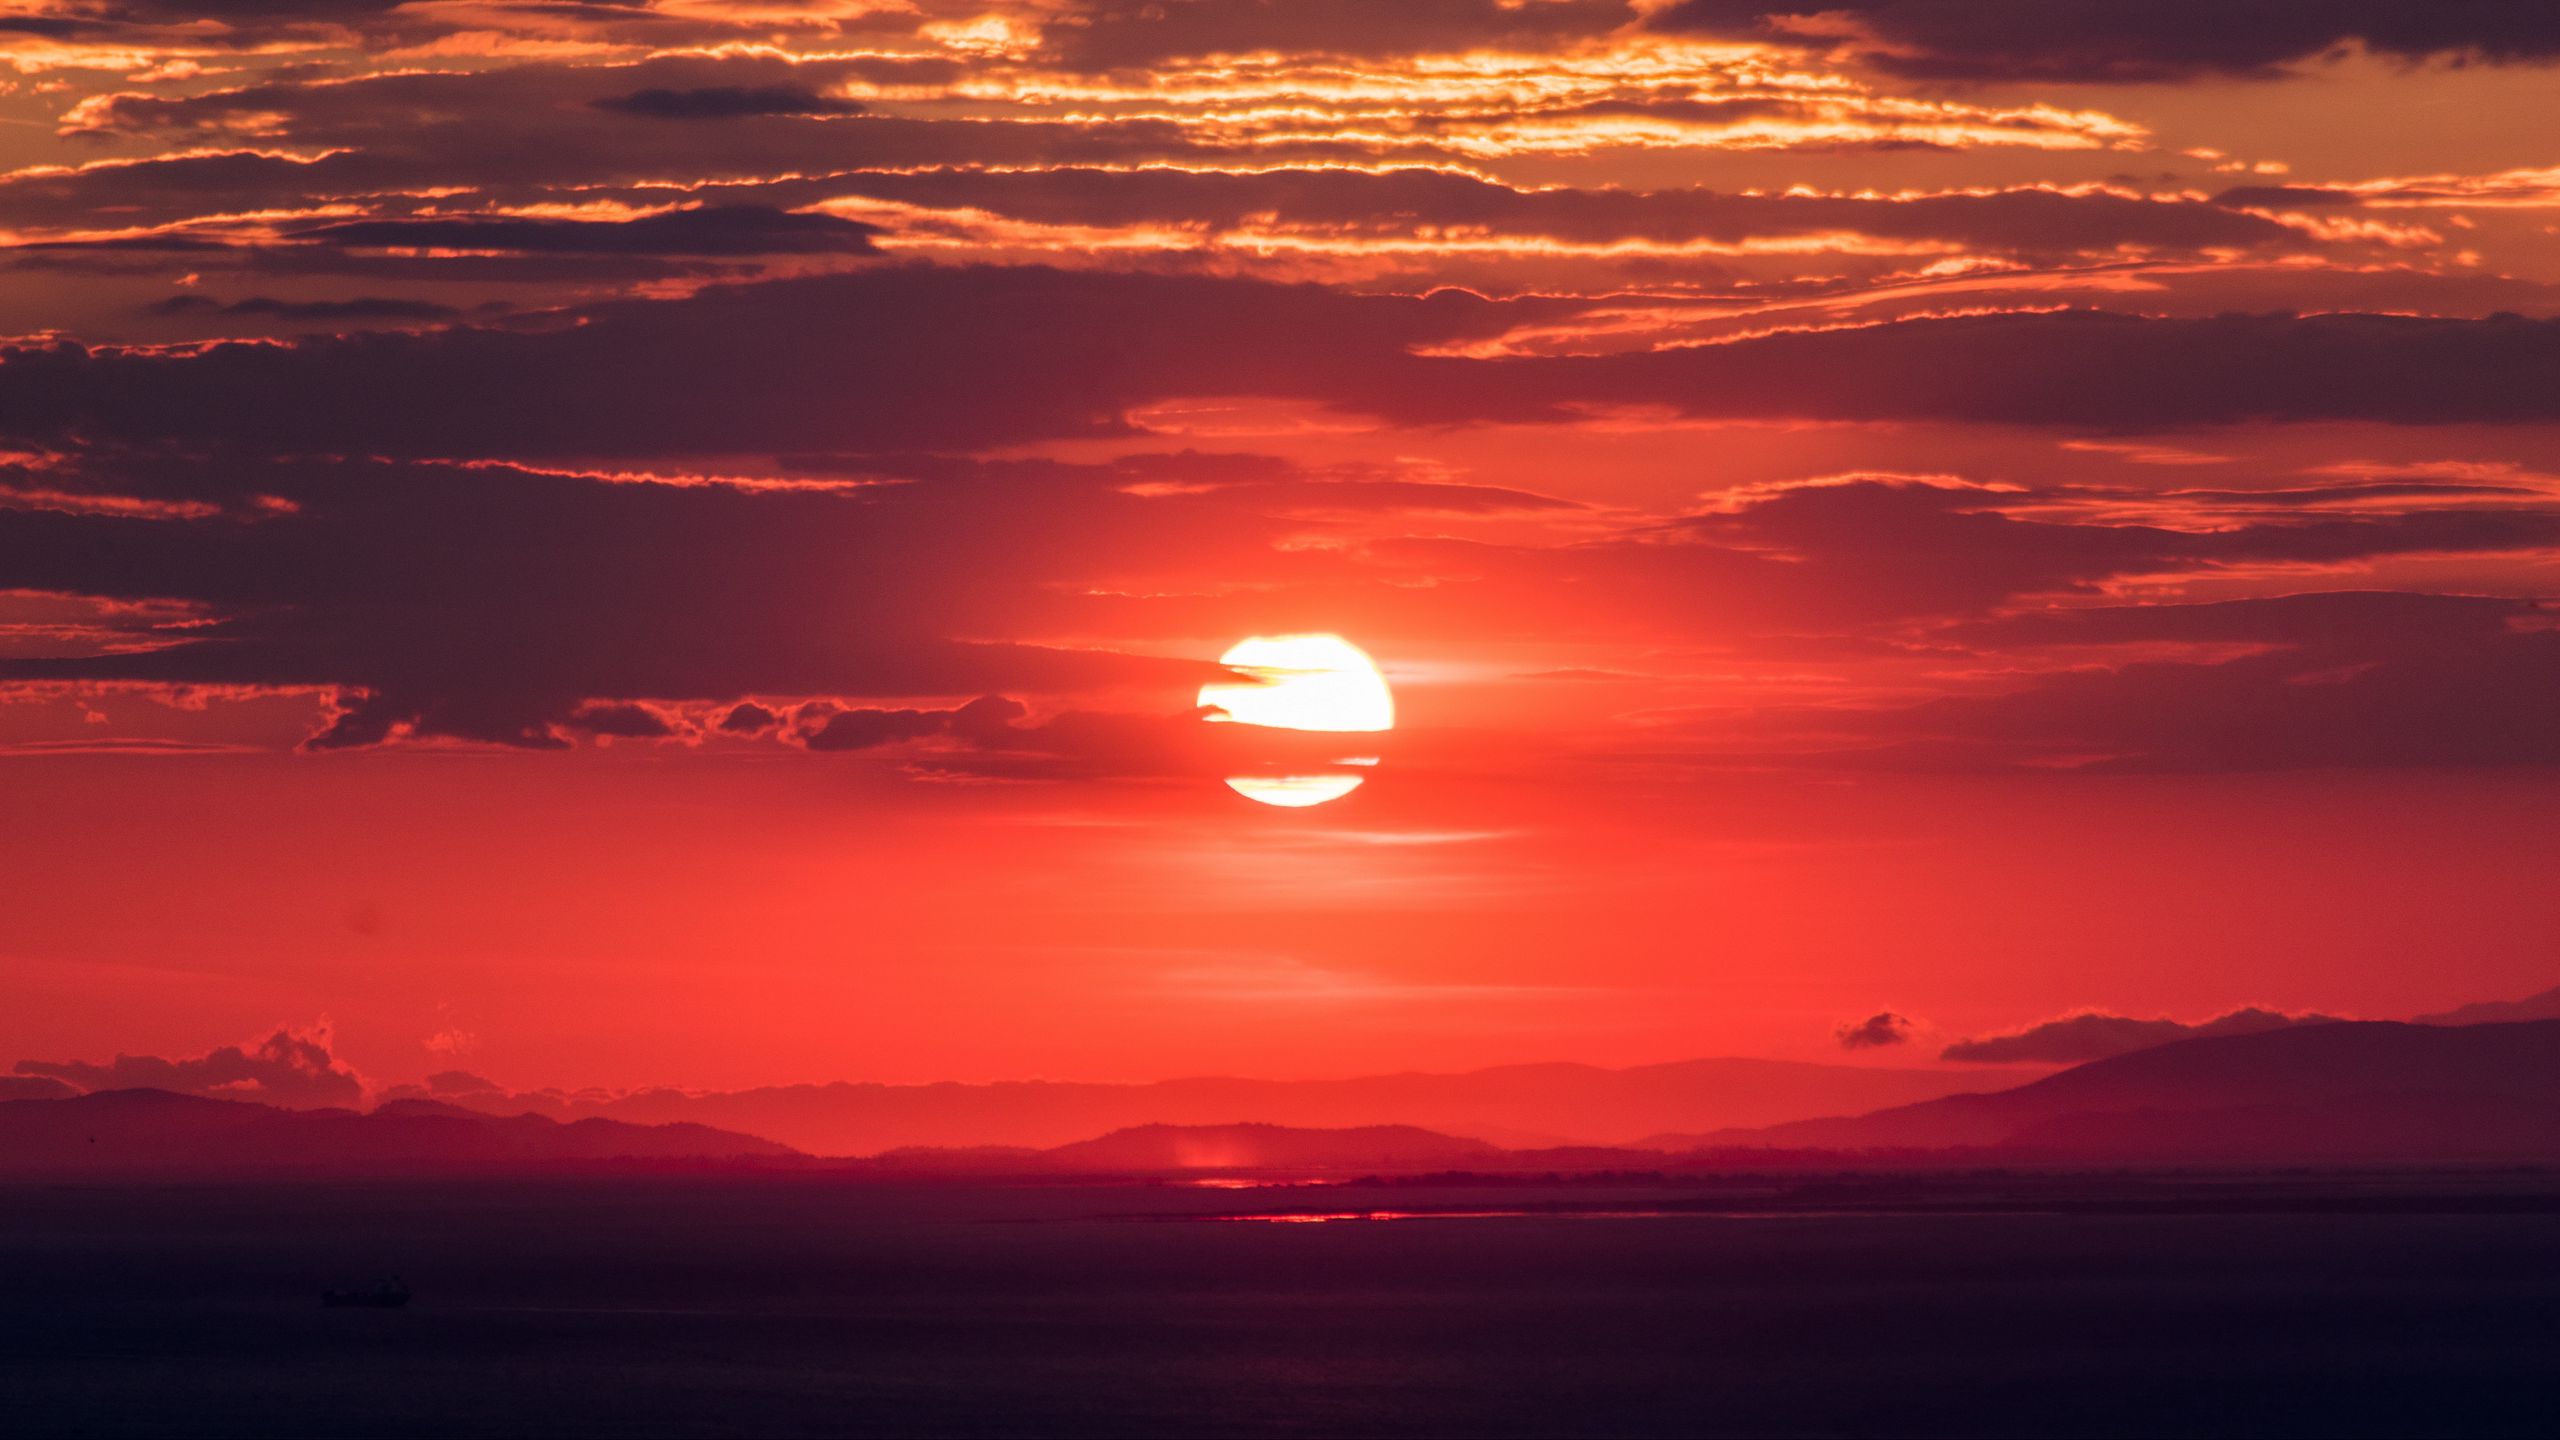 Download Wallpaper 2560x1440 Sun Sunset Sky Widescreen 16 9 Hd Background